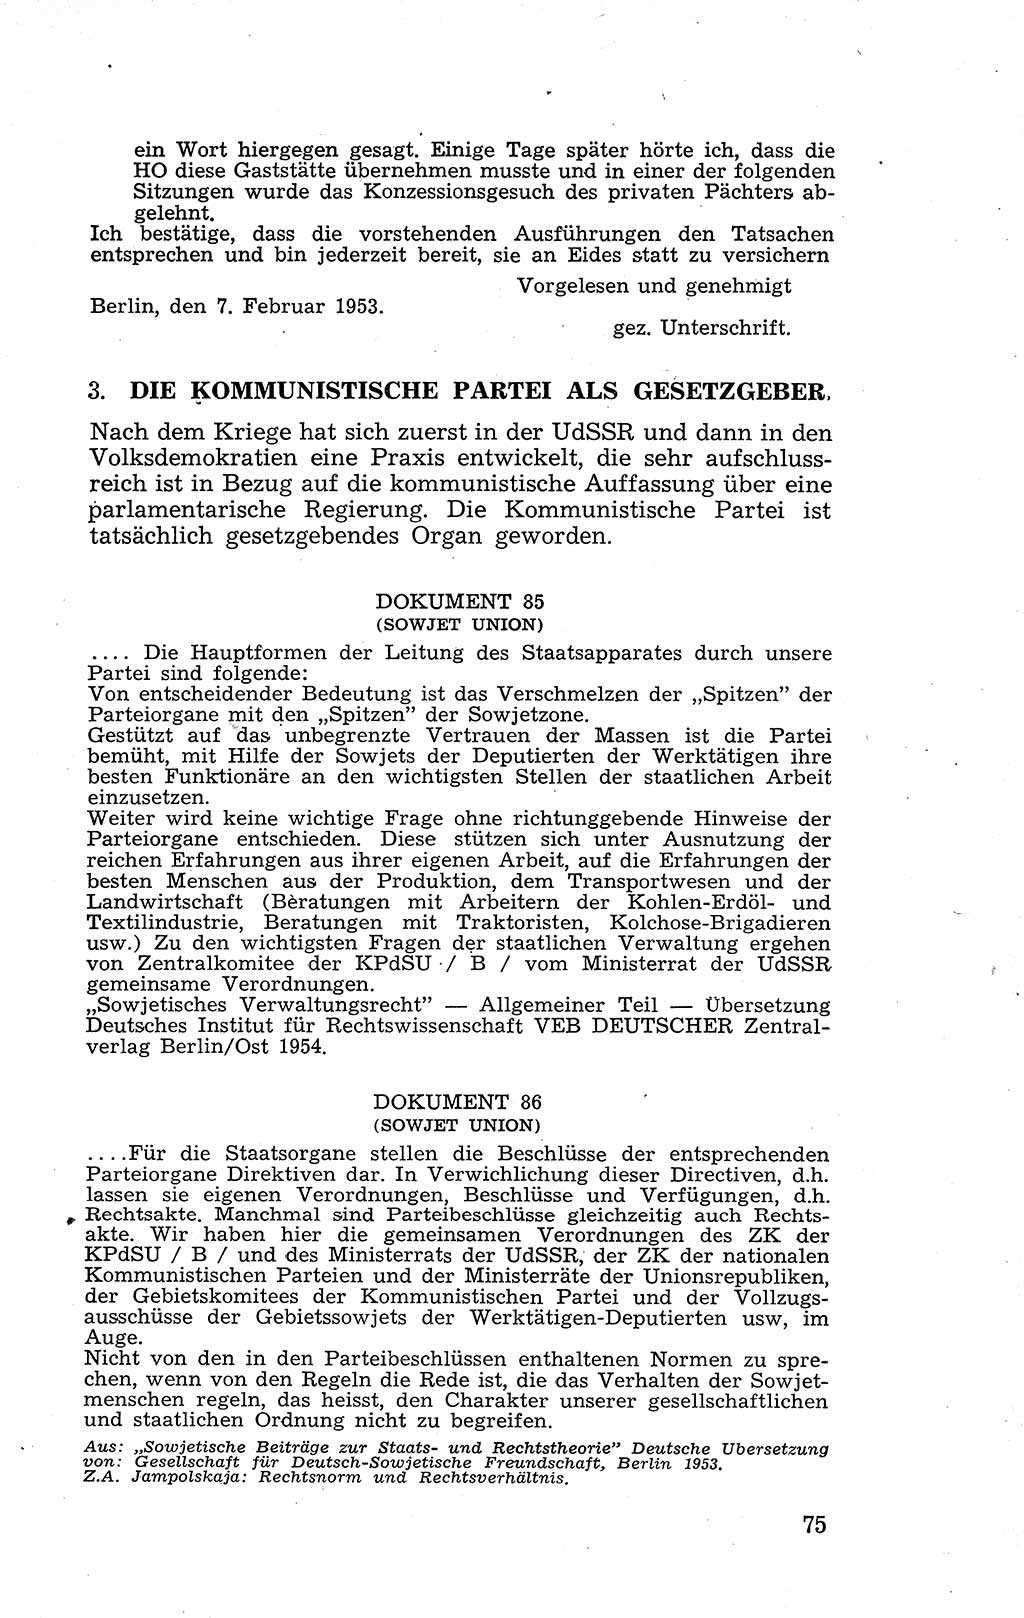 Recht in Fesseln, Dokumente, Internationale Juristen-Kommission [Bundesrepublik Deutschland (BRD)] 1955, Seite 75 (R. Dok. IJK BRD 1955, S. 75)